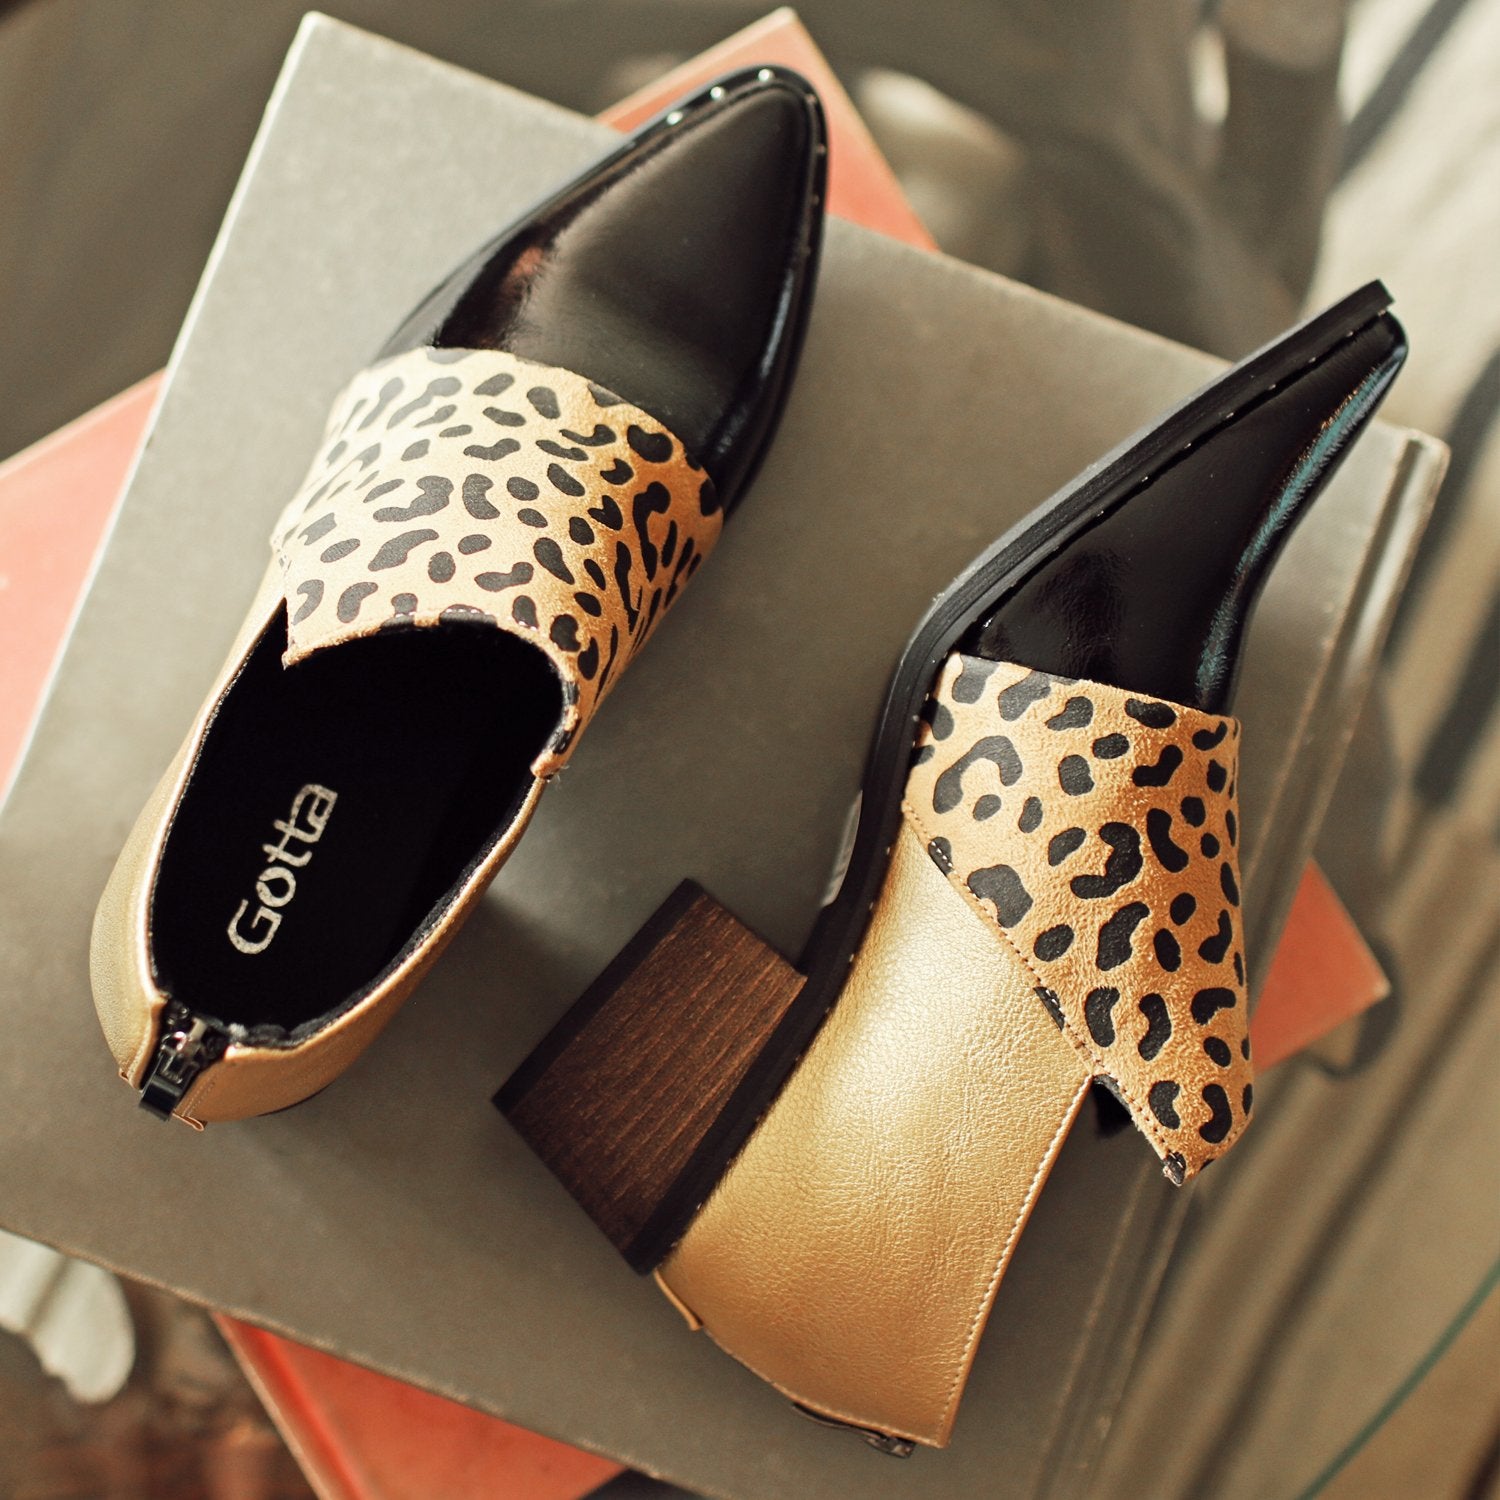 Zapato Leopardo Mujer C7269